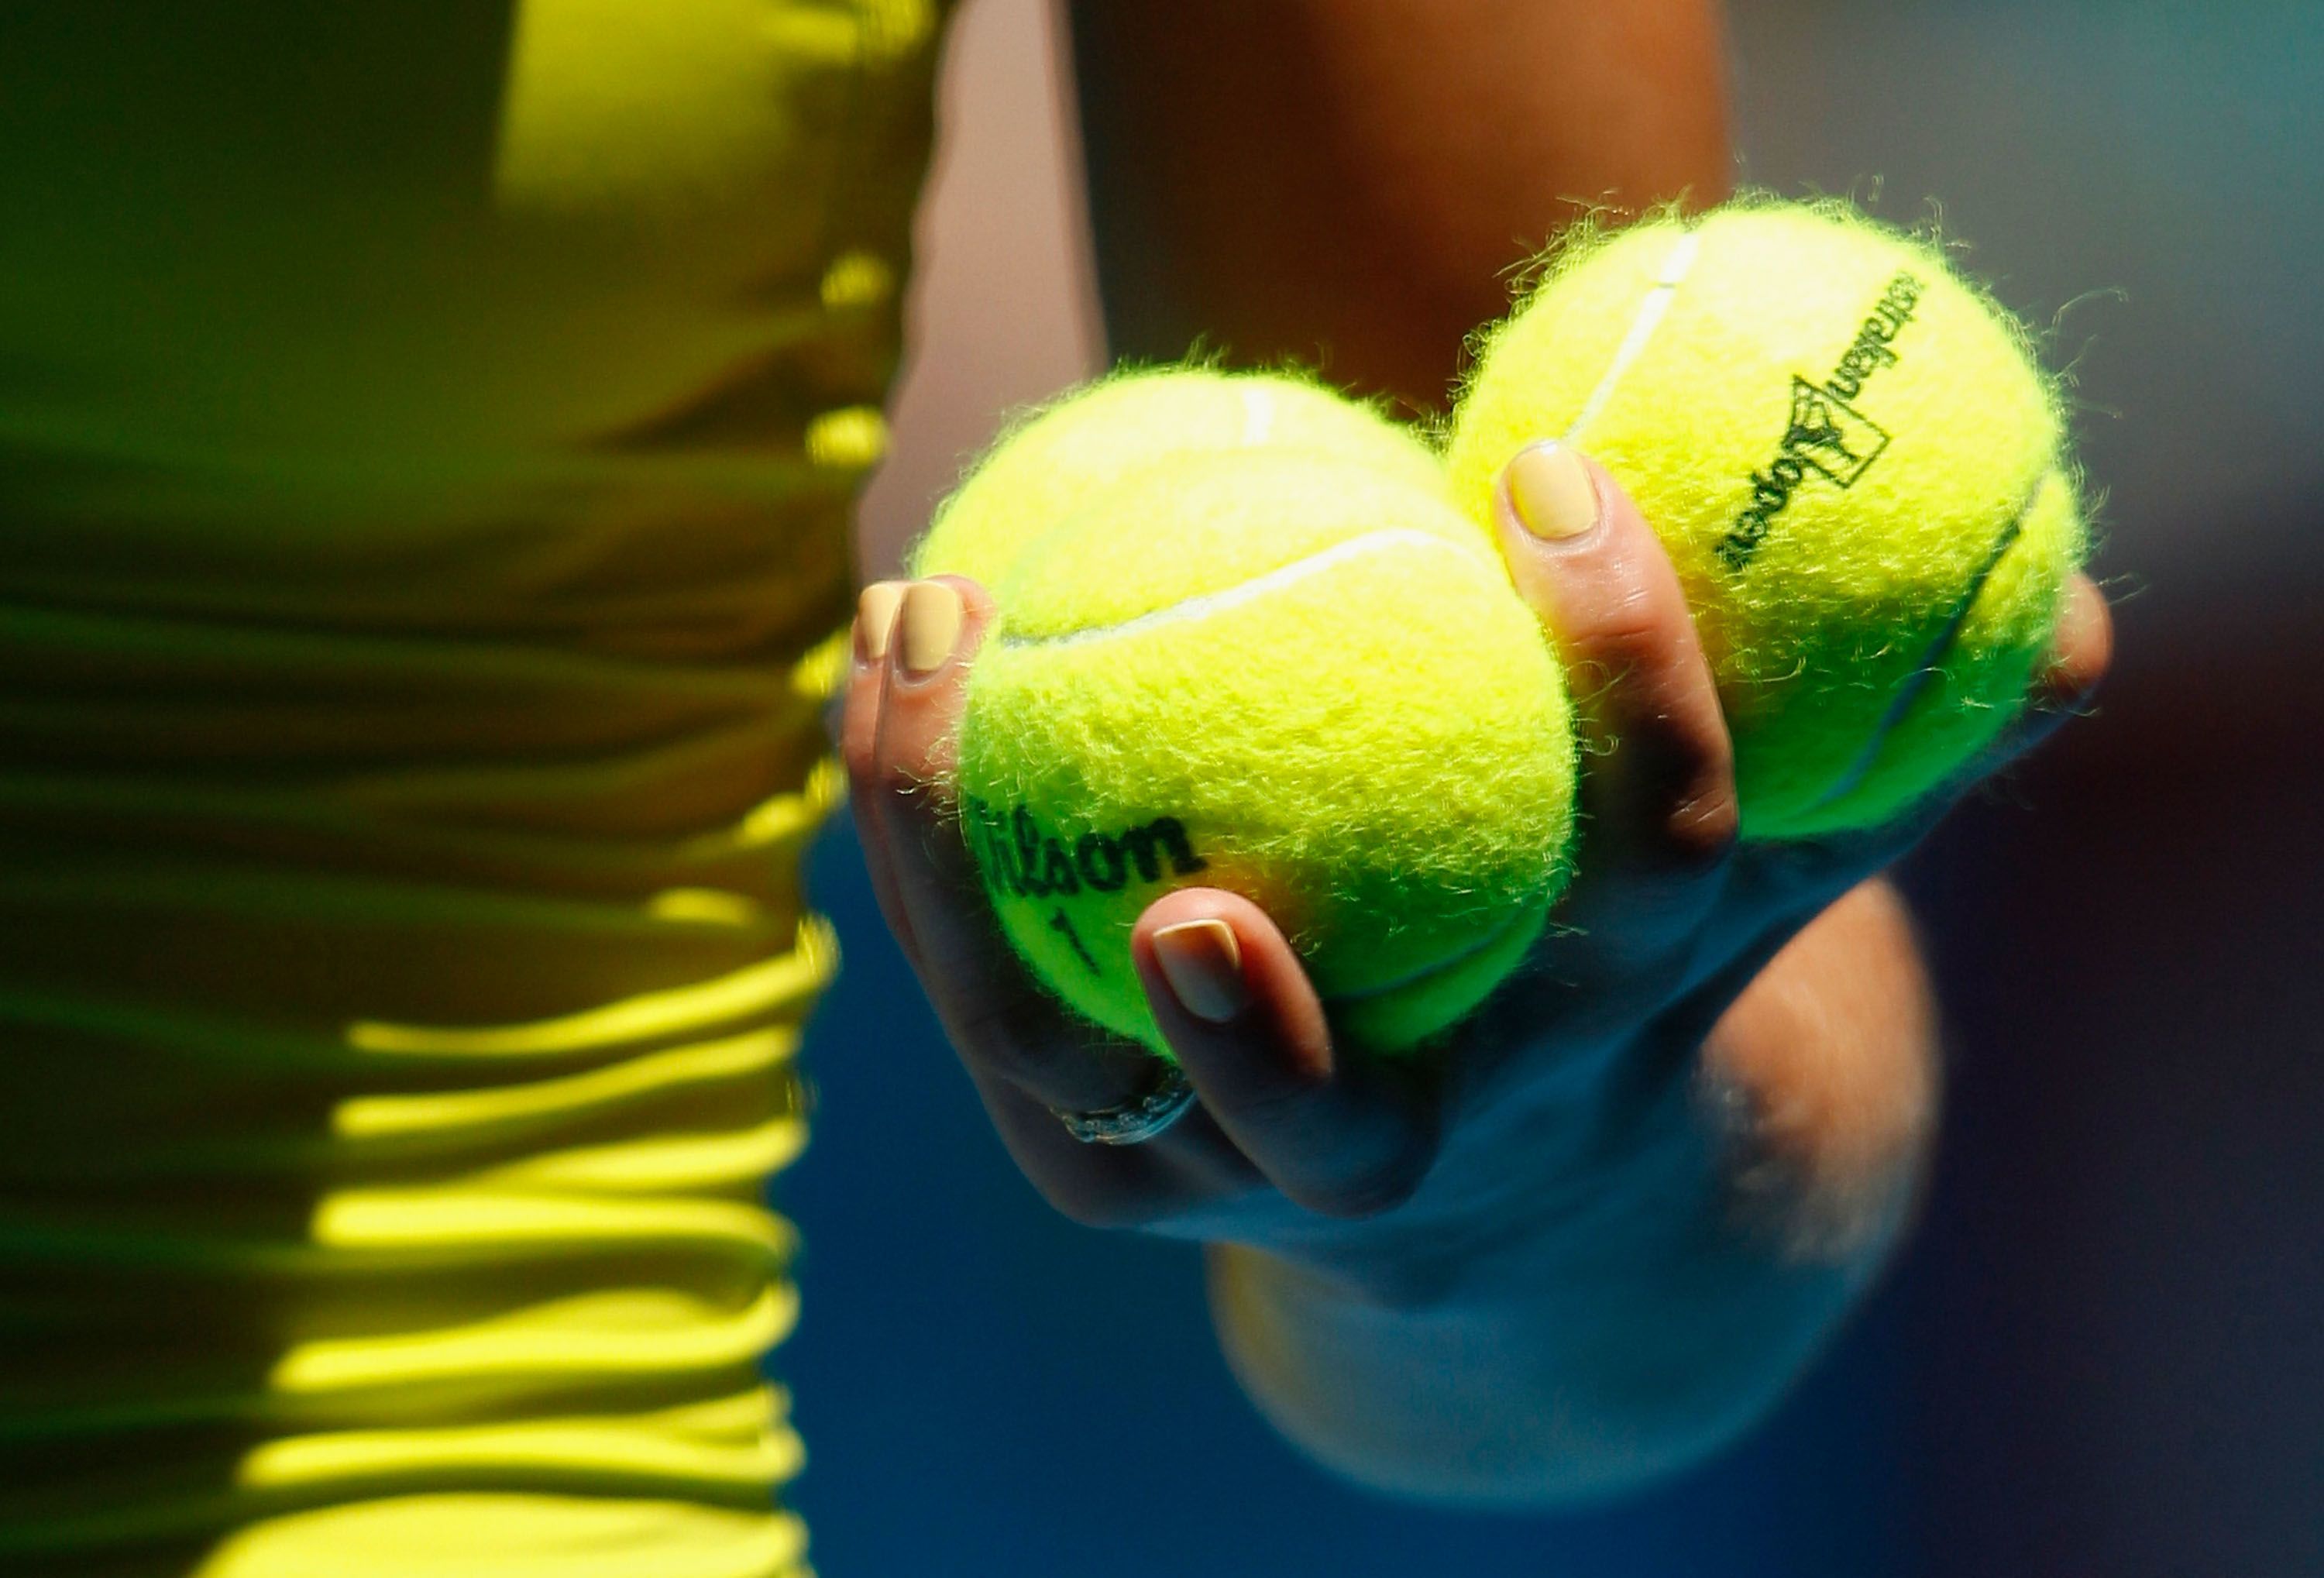 Pourquoi les balles de tennis sont jaunes ? - Marie Claire